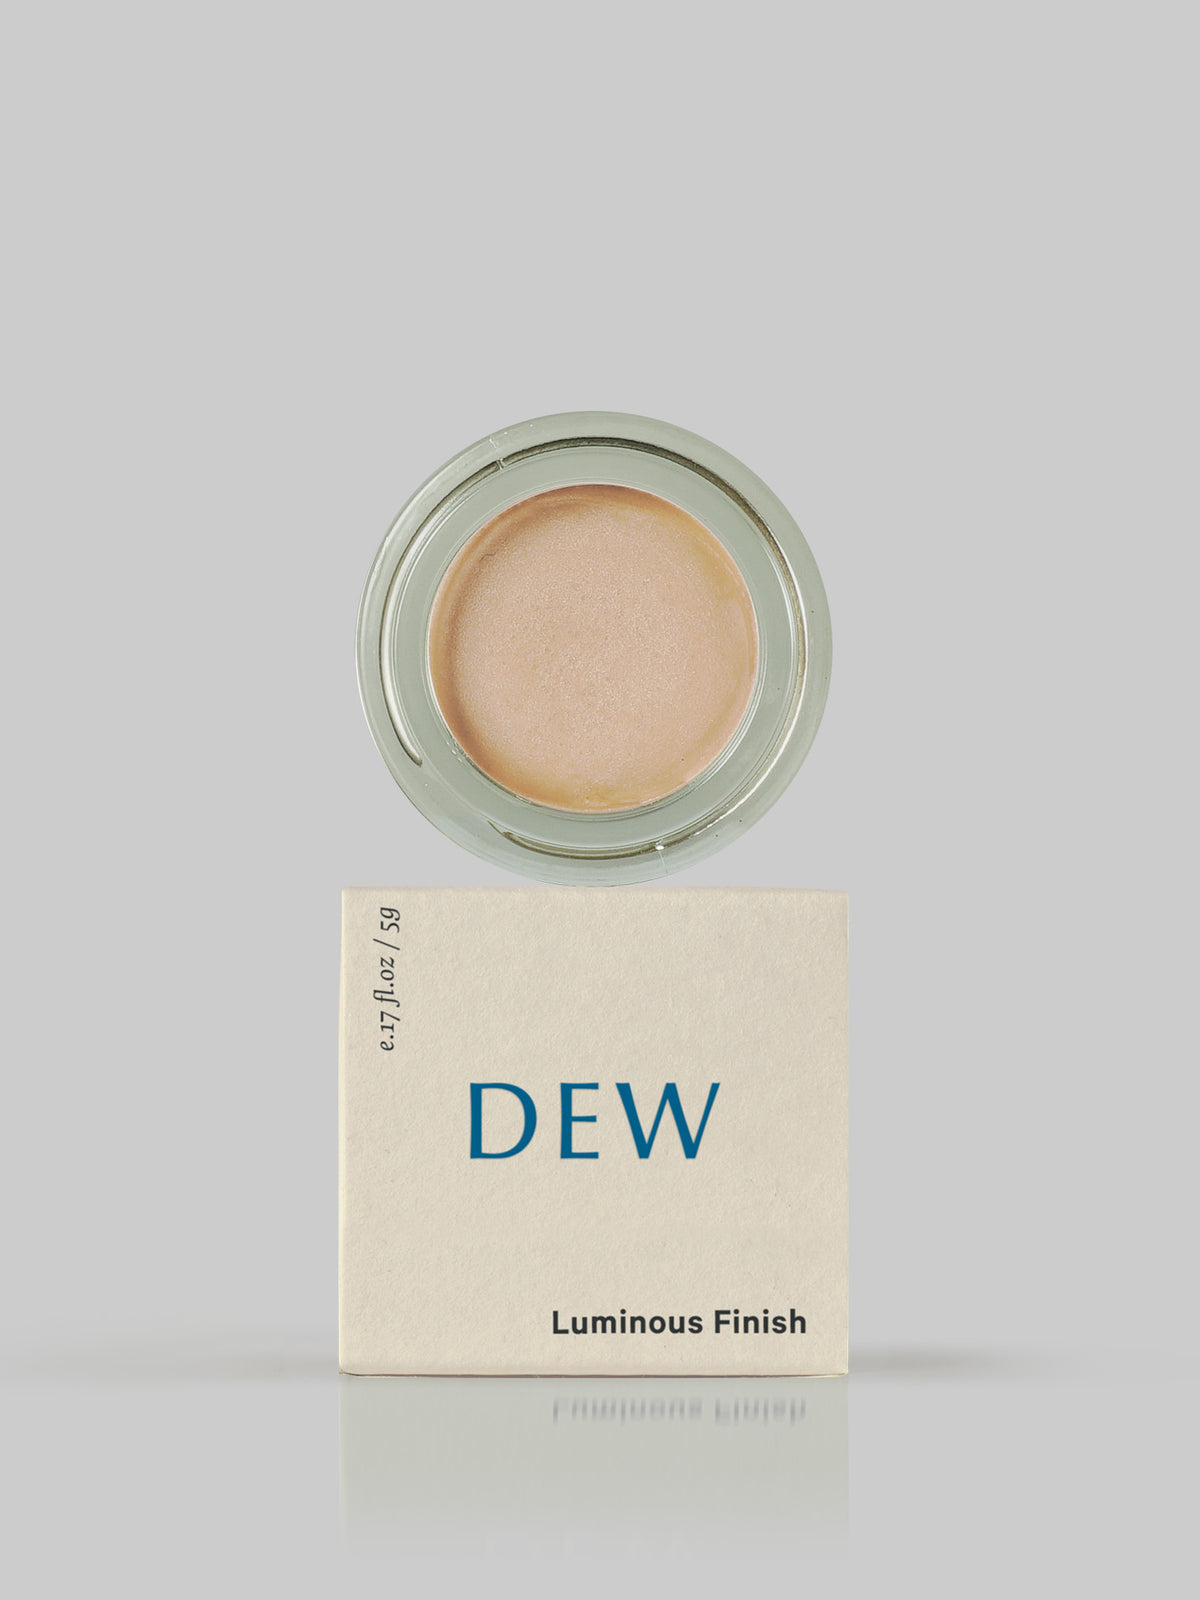 MARYSE Dew – Luminous Finish blush.